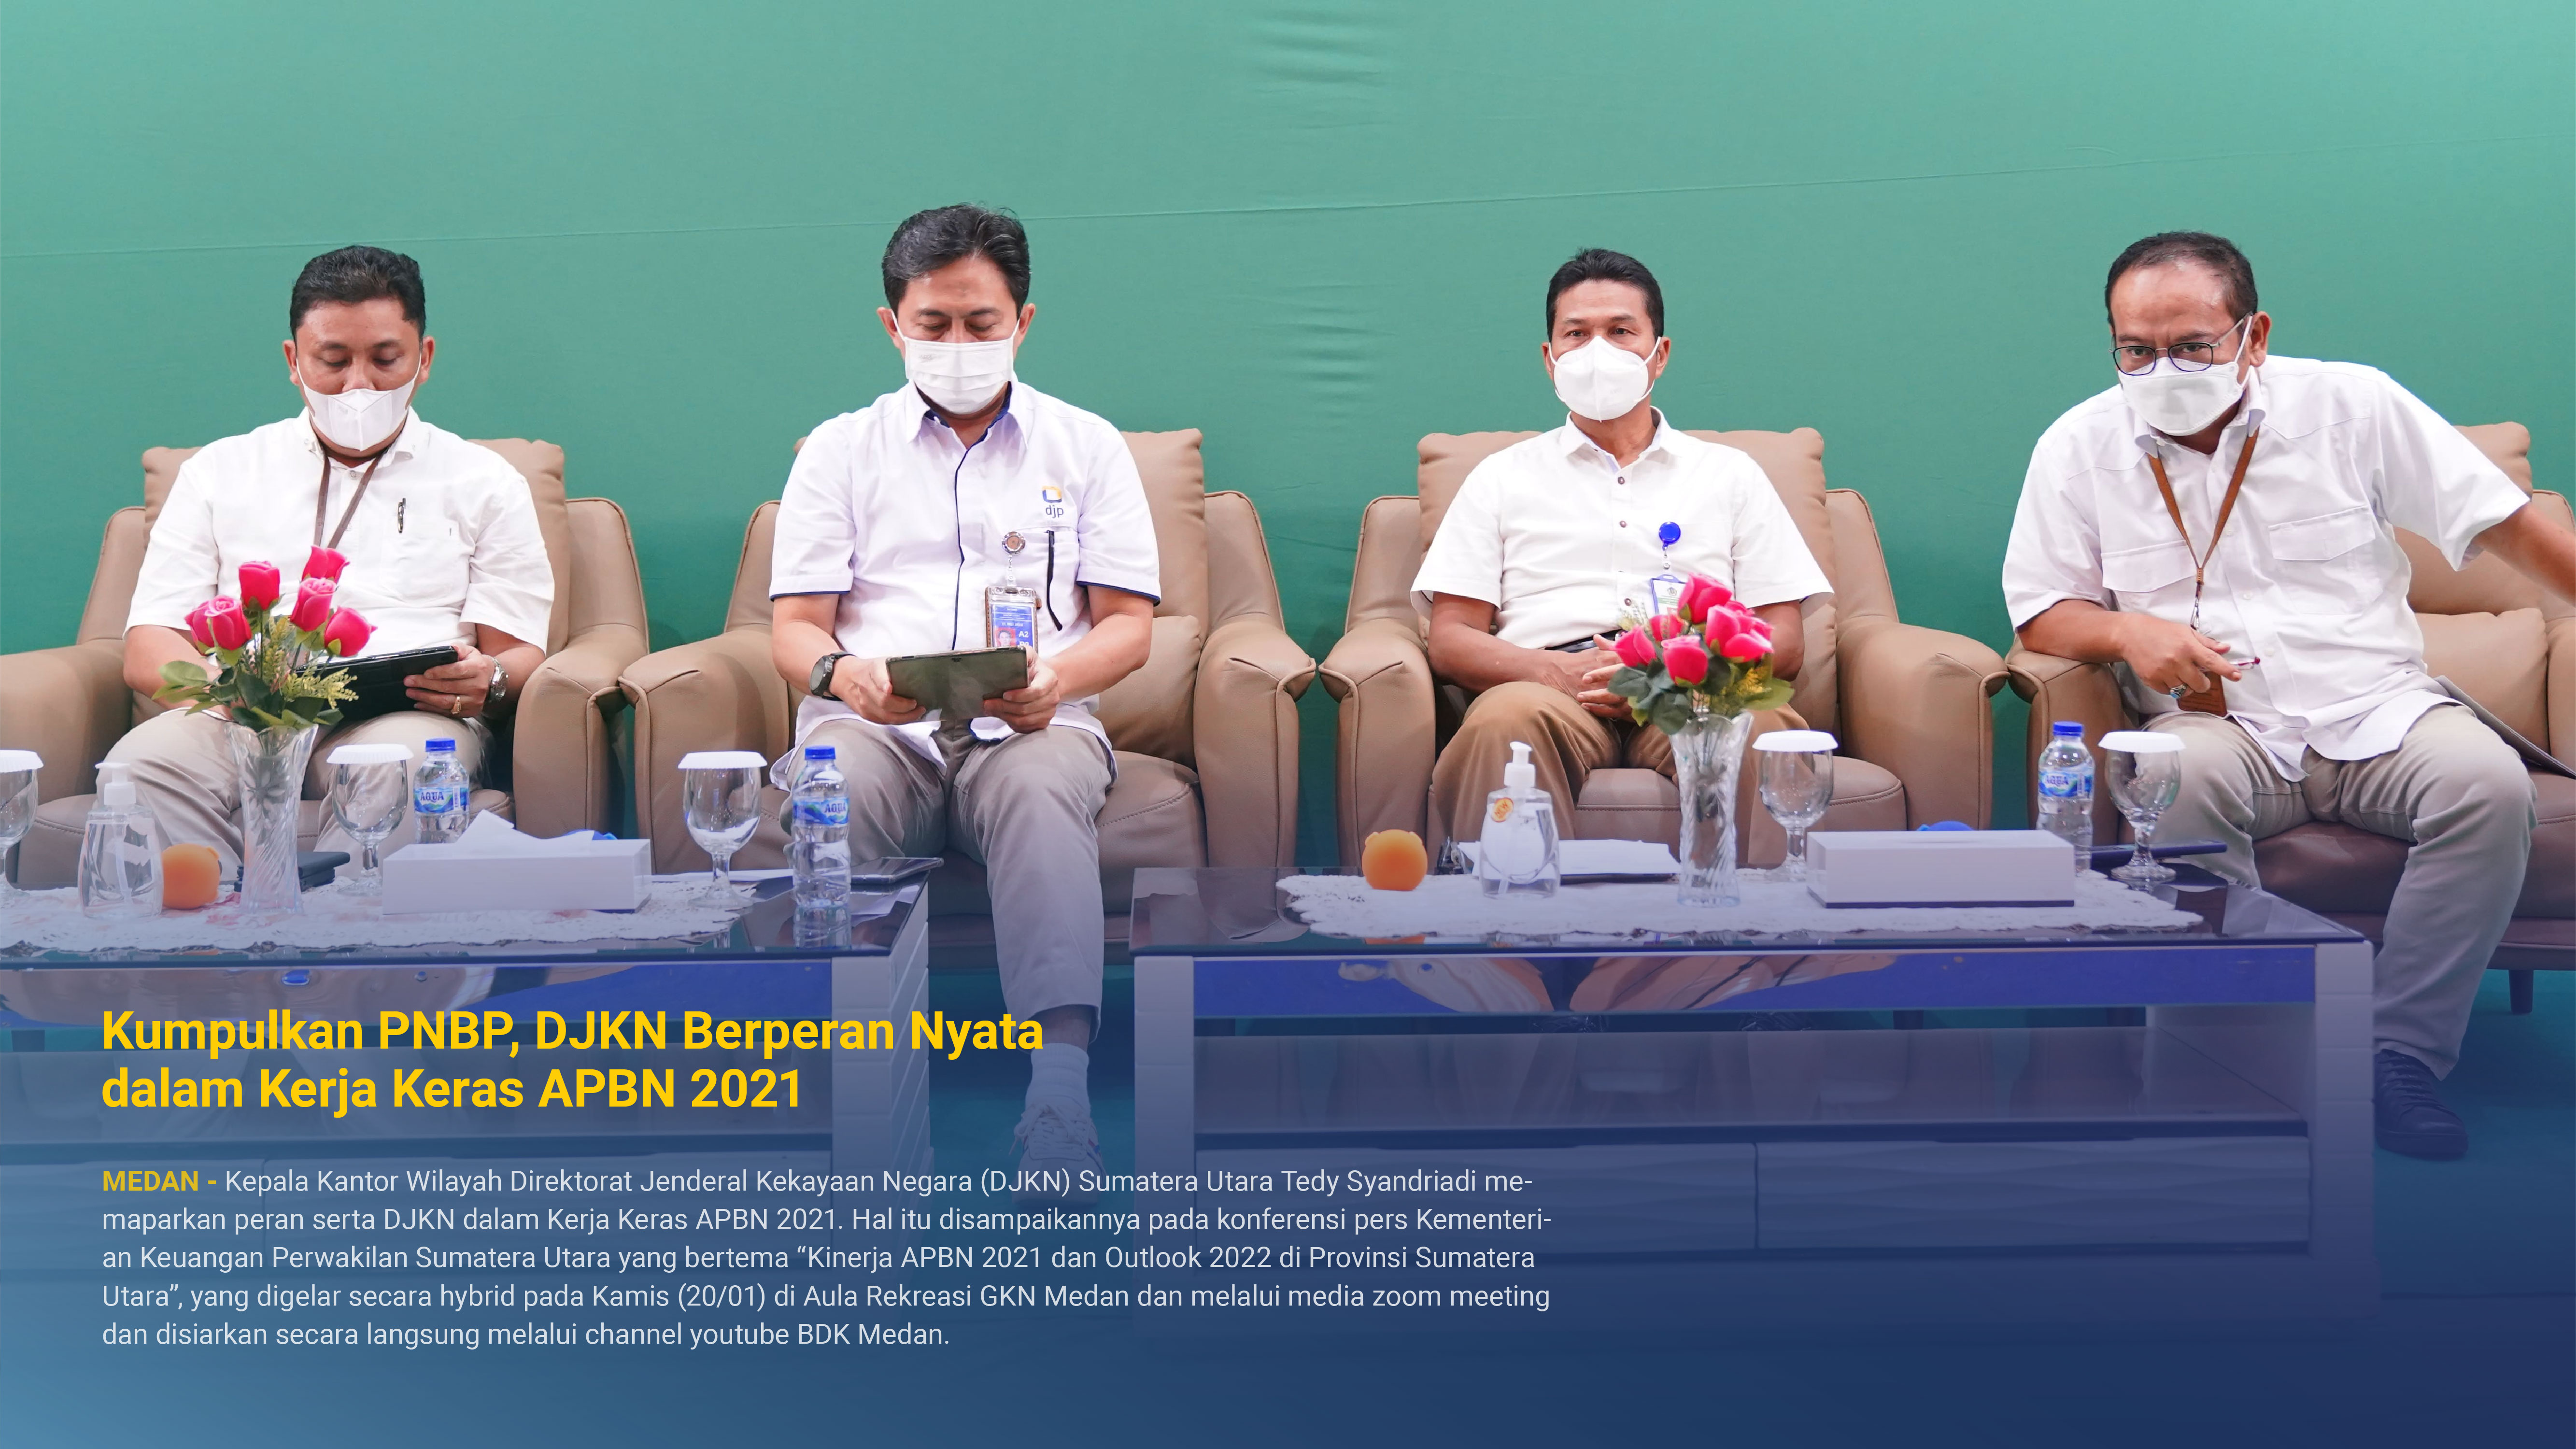  Kumpulkan PNBP, DJKN Berperan Nyata dalam Kerja Keras APBN 2021